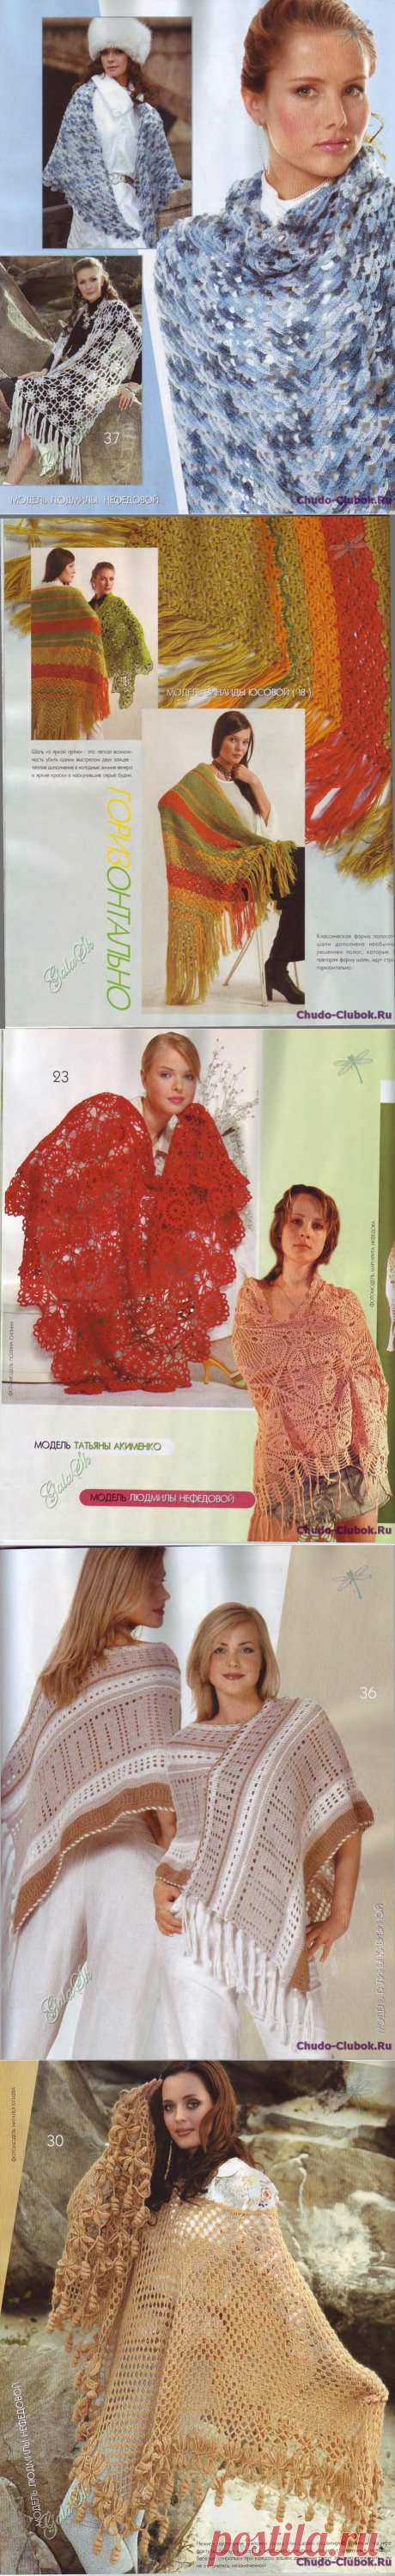 Журнал Мод 500 2007 шали |❤️️ ЧУДО-КЛУБОК.РУ ➲ журналы по вязанию✶